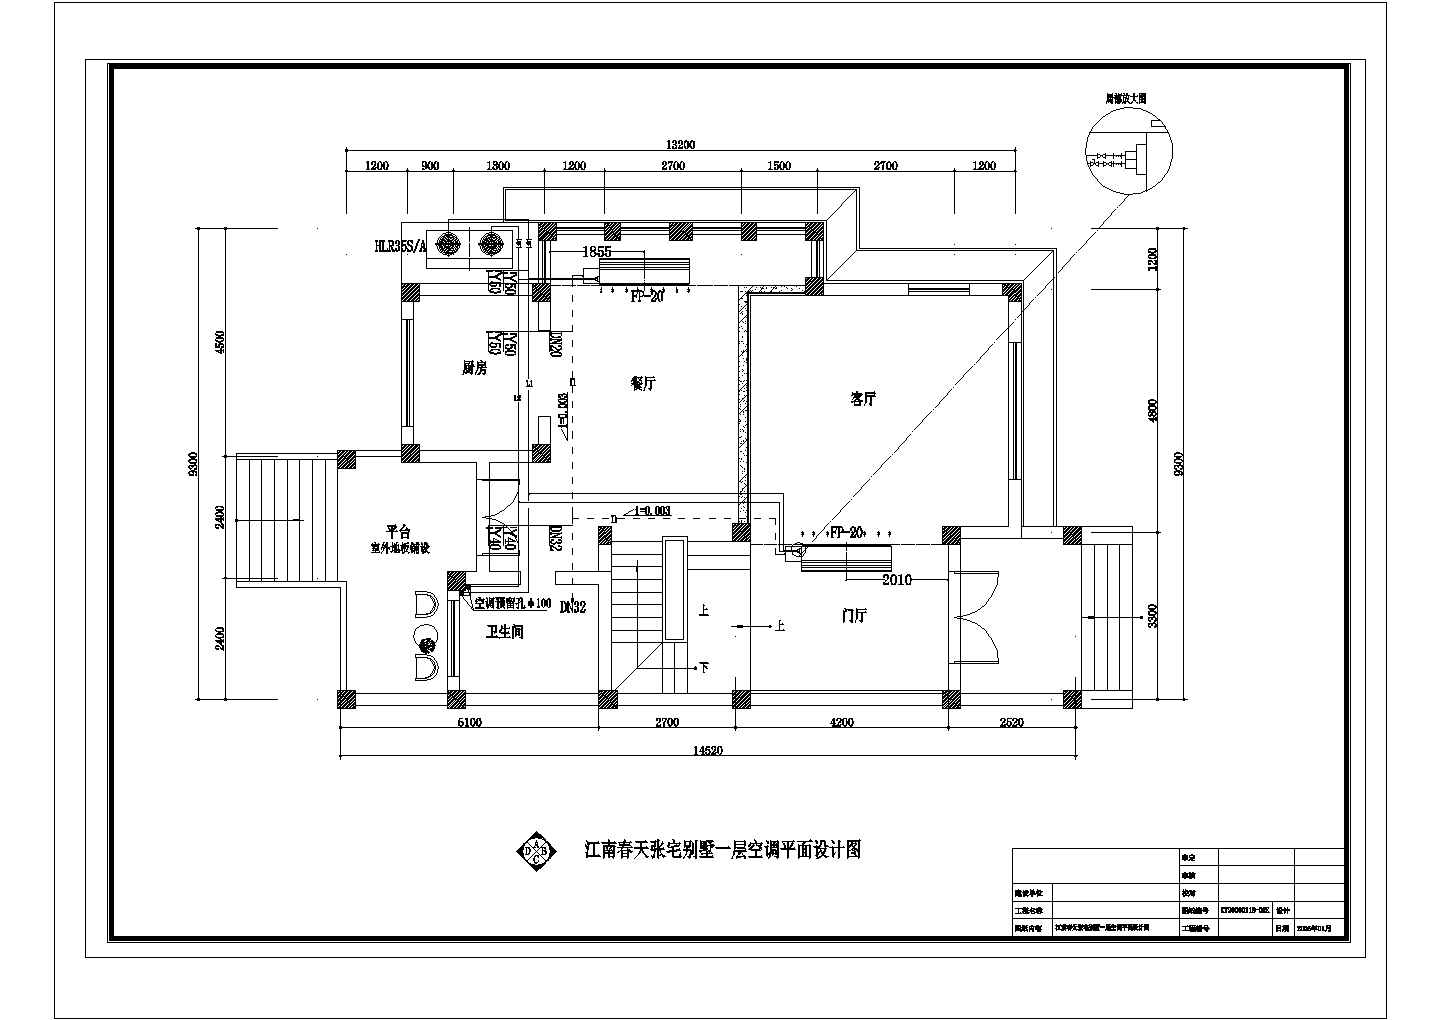 户式别墅数码多联空调设计施工图